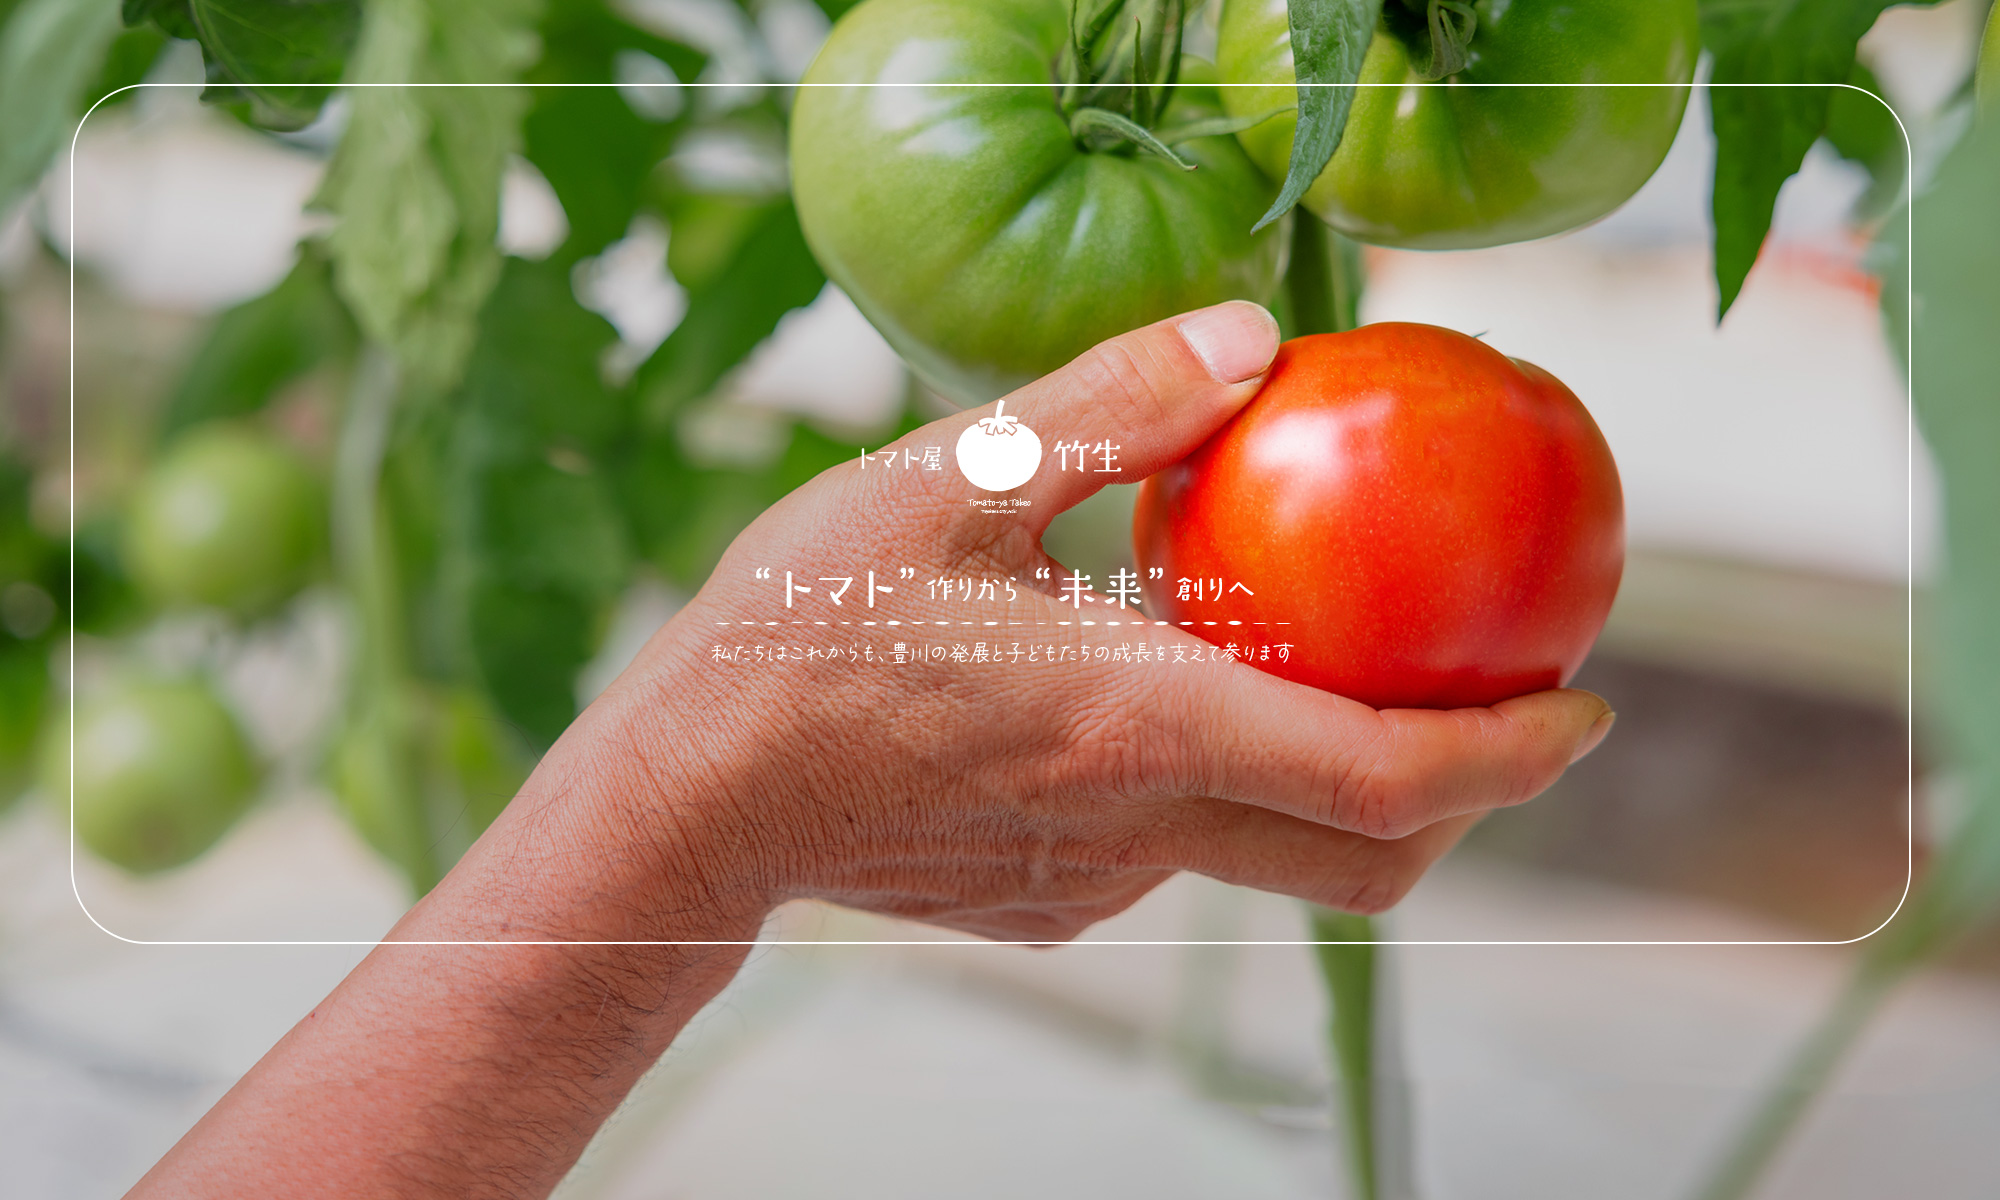 トマト作りから未来創りへ